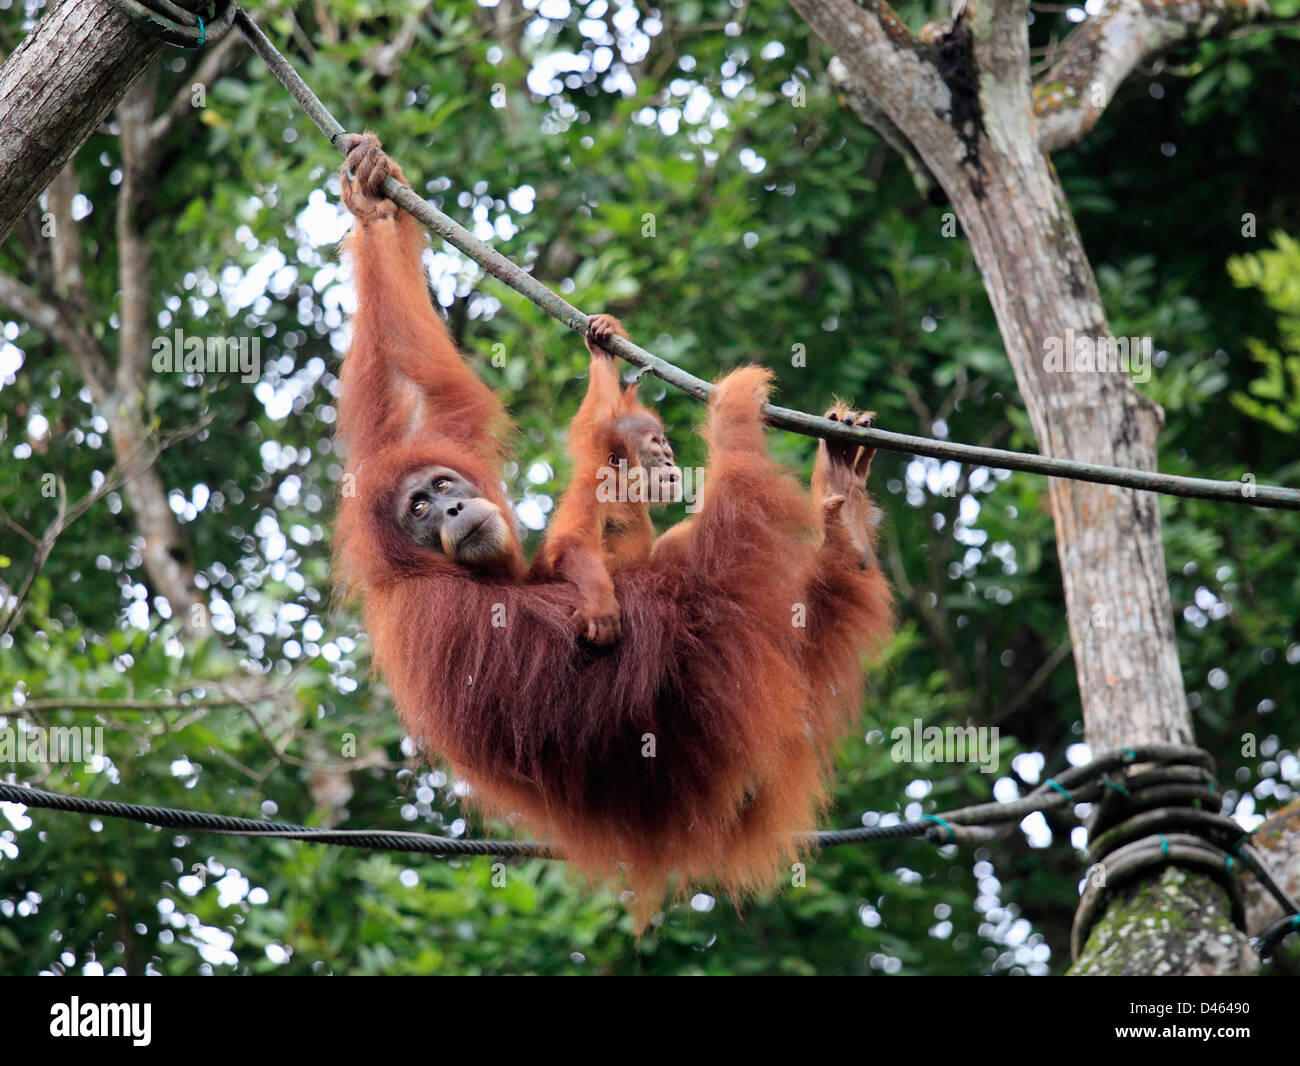 Orangutan, pongo pygmaeus, primates, Singapore Zoo, Stock Photo